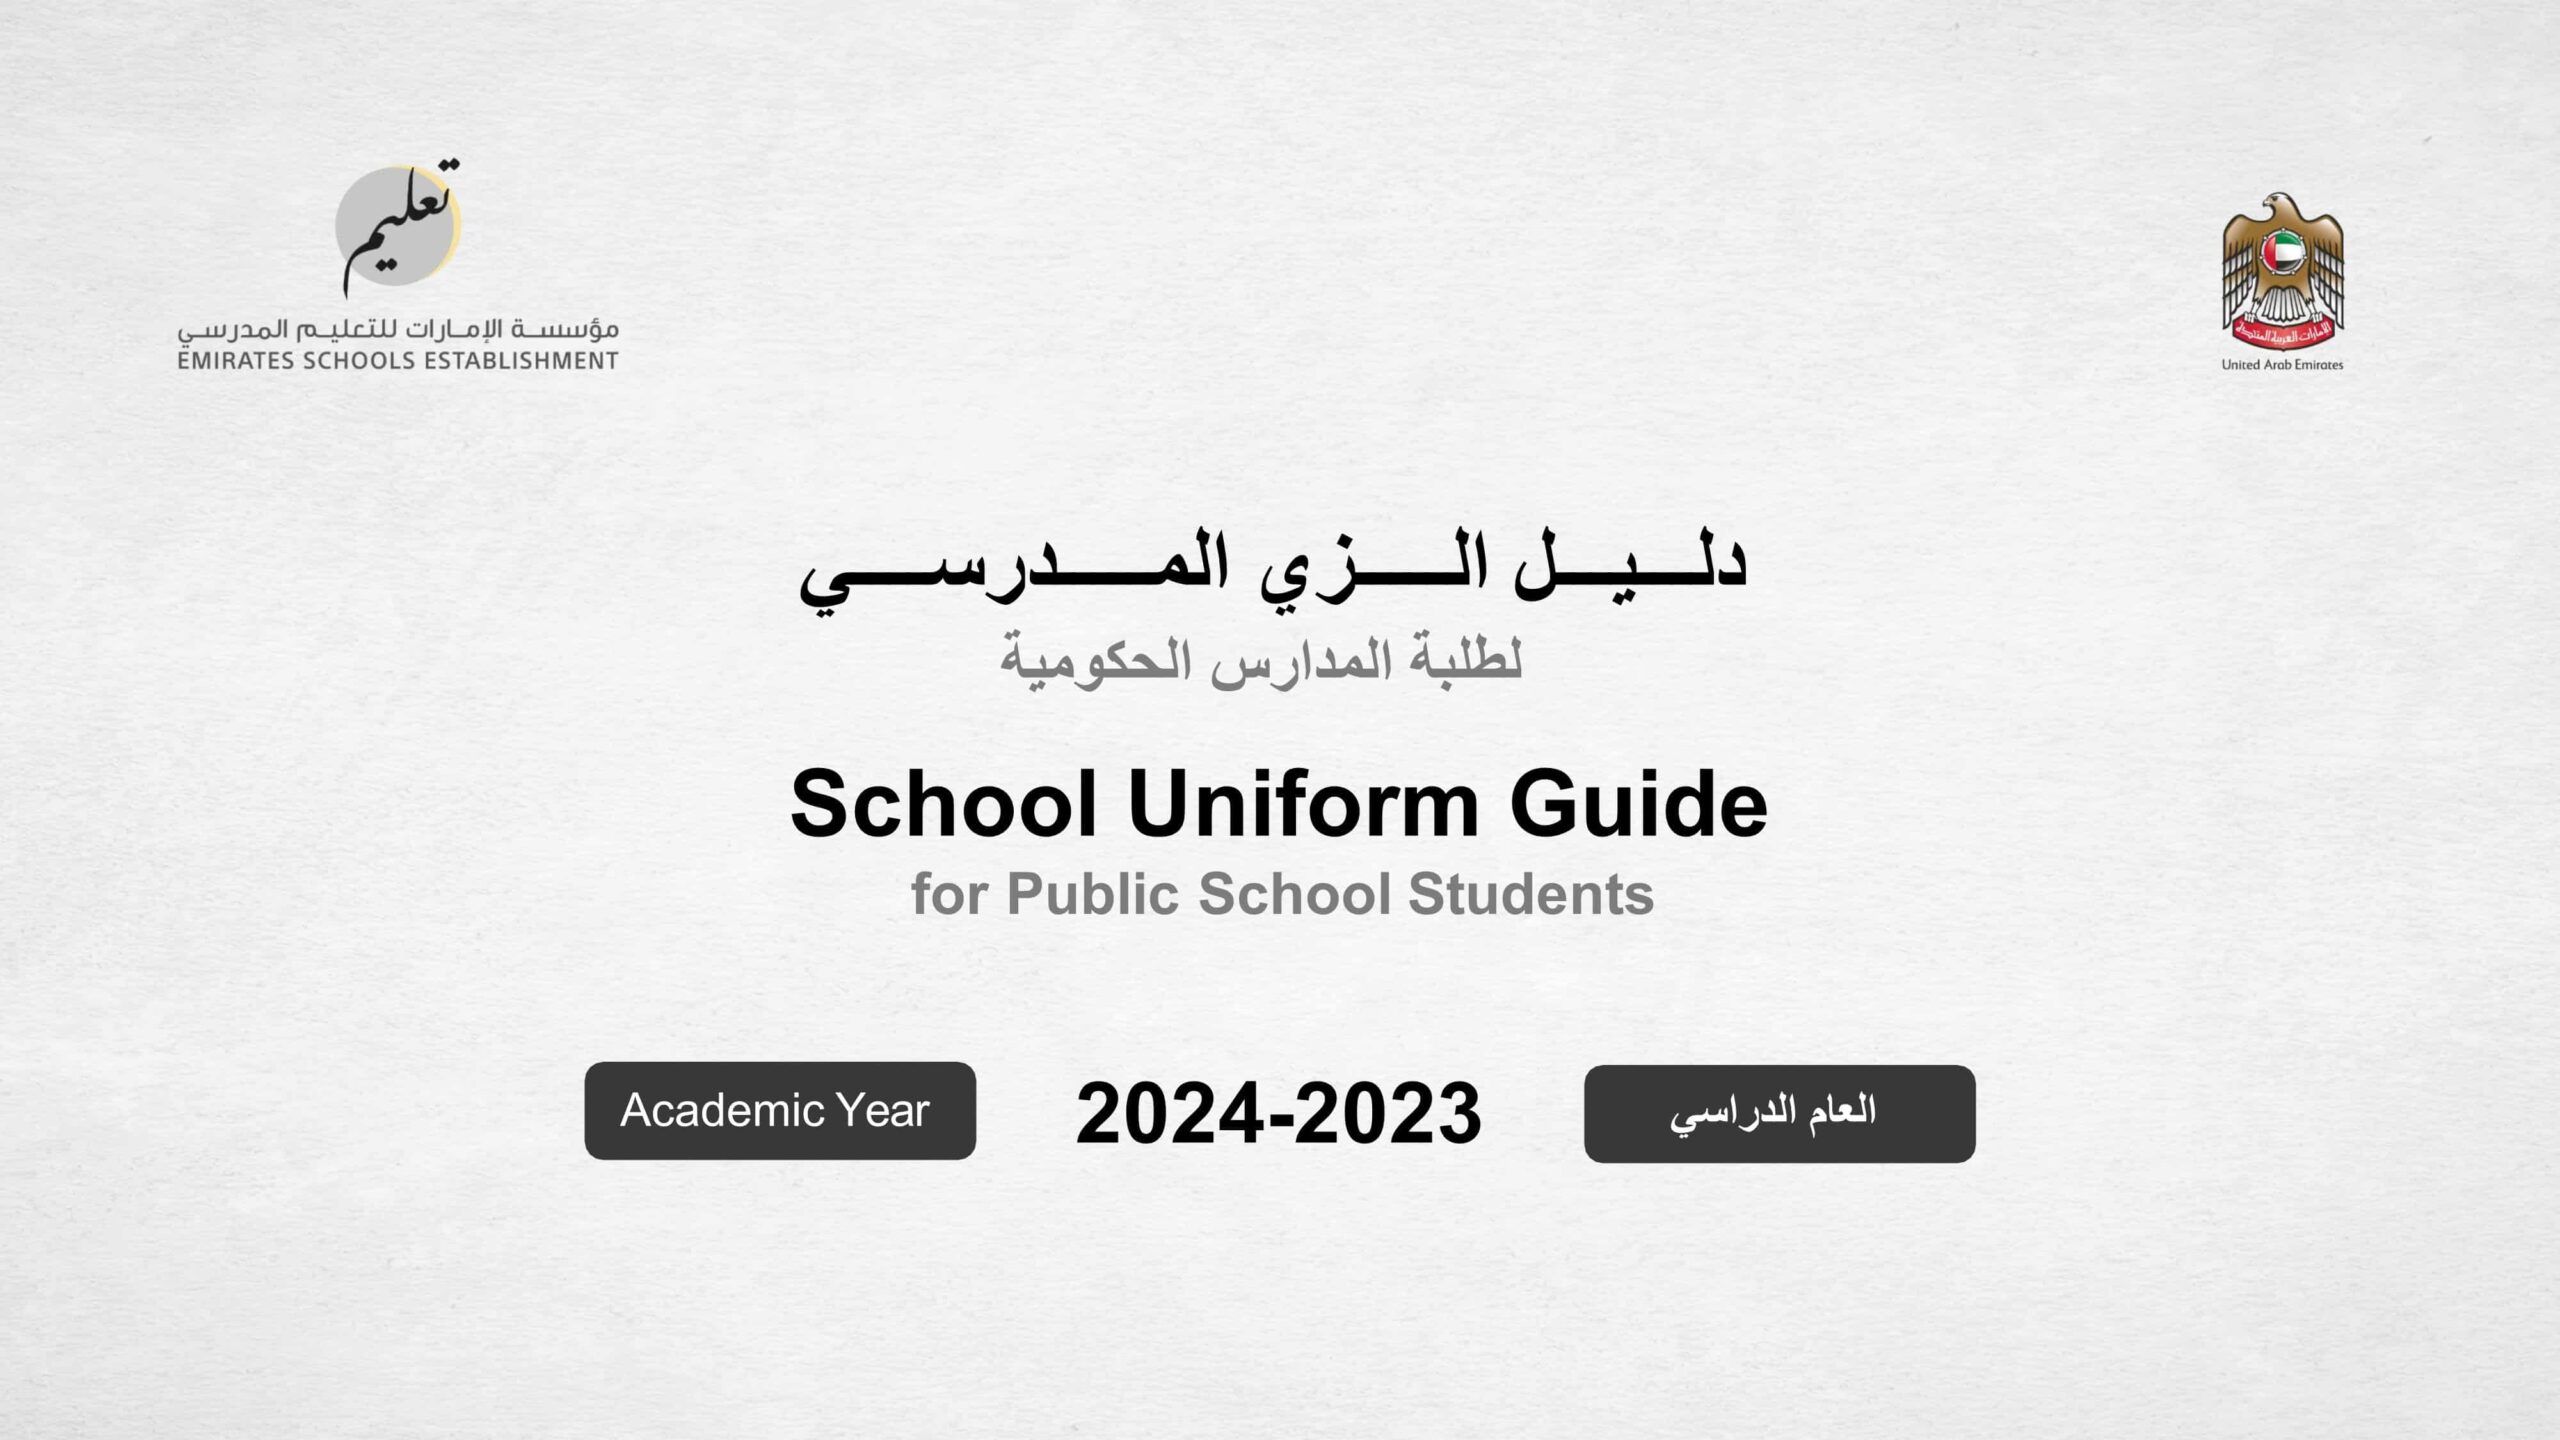 دلیل الزي المدرسي لطلبة المدارس الحكومیة للعام الدراسي 2024-2023